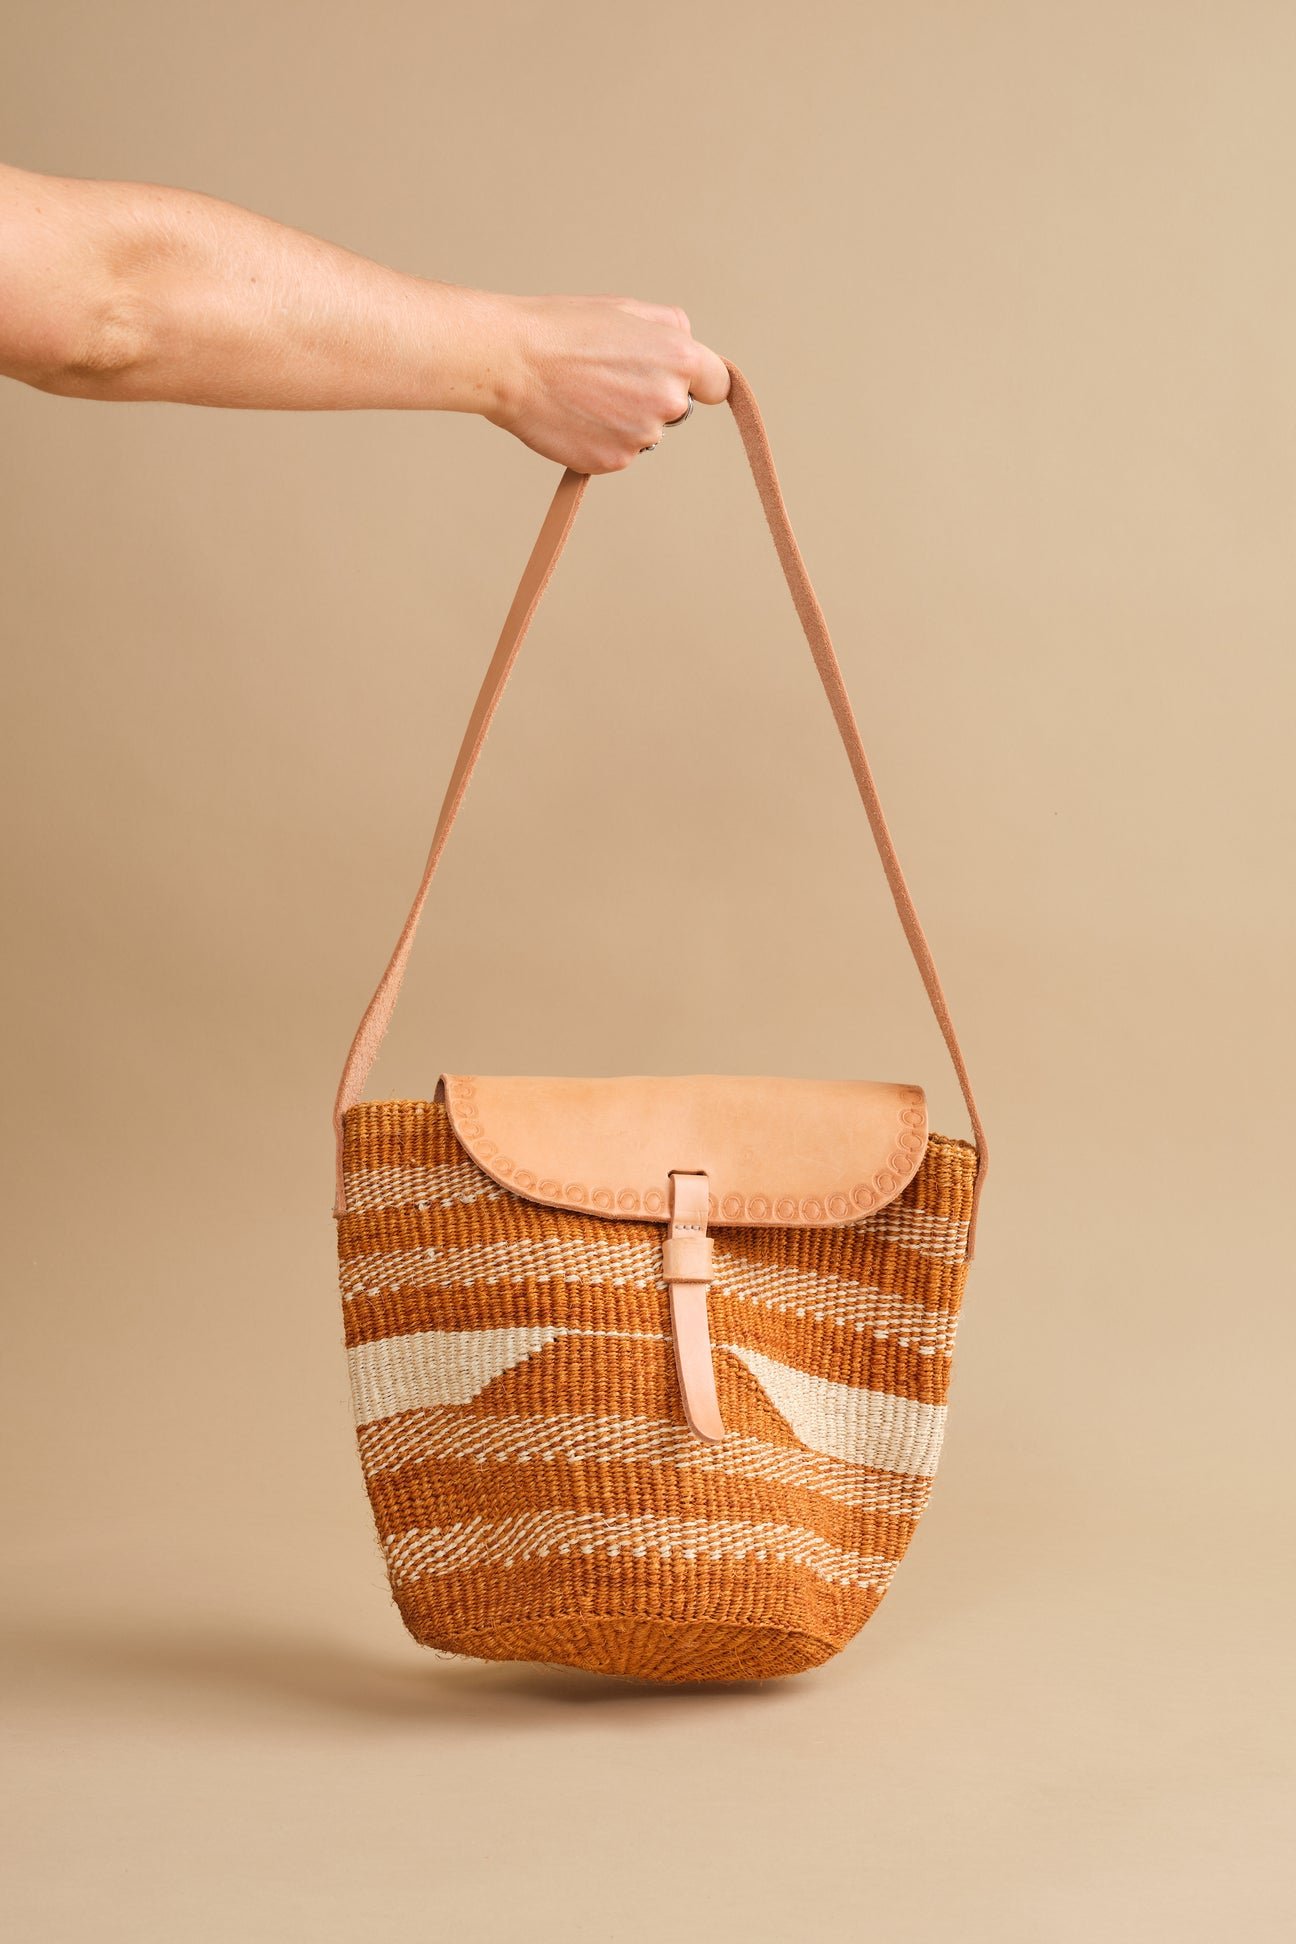 African Sisal bag, Woven Boho Leather bag Naruki